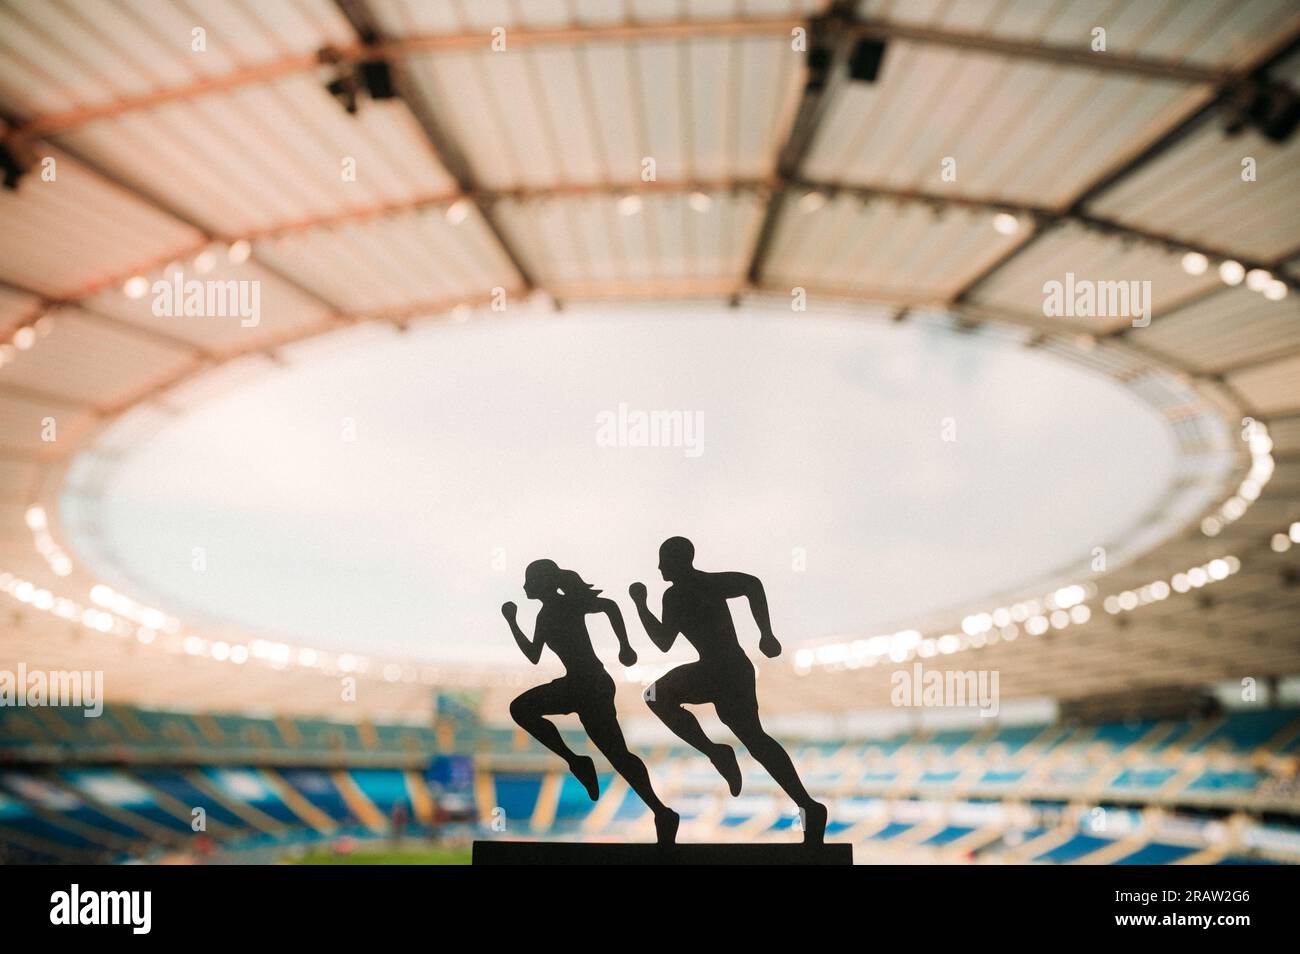 Die Silhouetten männlicher und weiblicher Läufer zeigen Widerstandsfähigkeit und Einheit und beleben ein modernes Sportstadion. Stockfoto